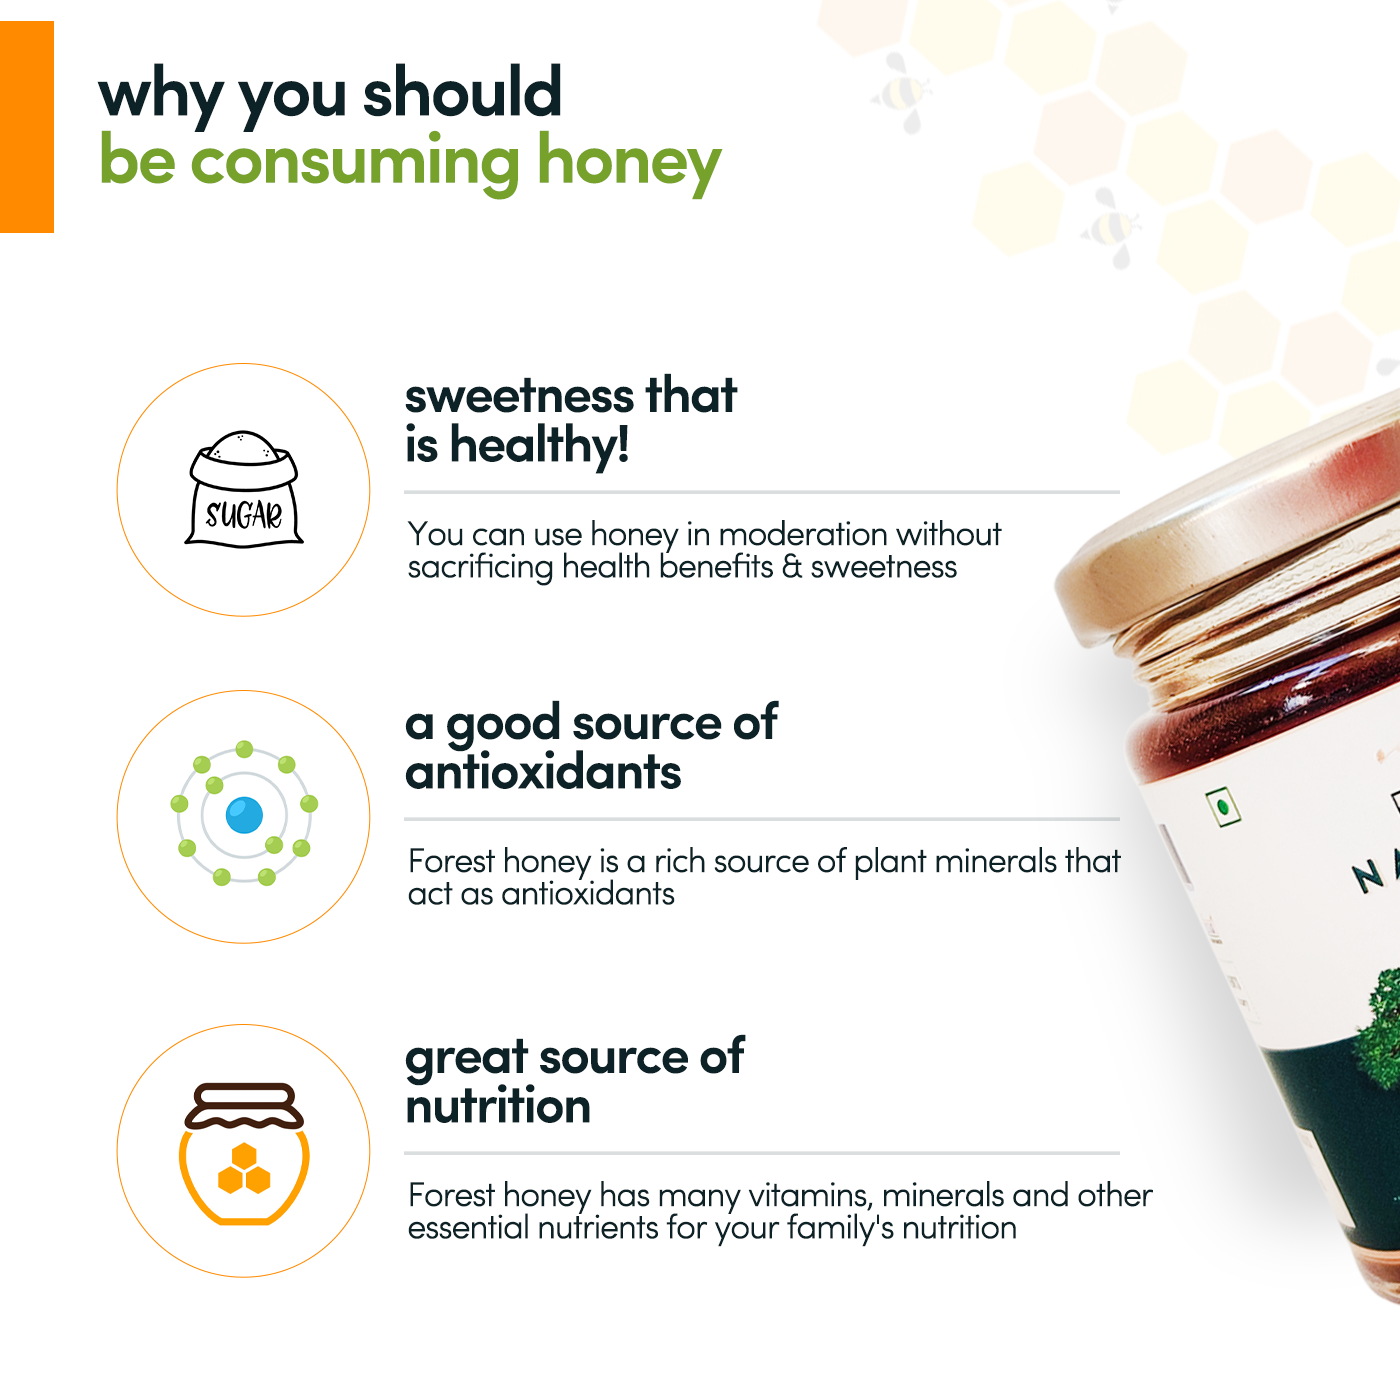 Pour Naturale Forest Honey